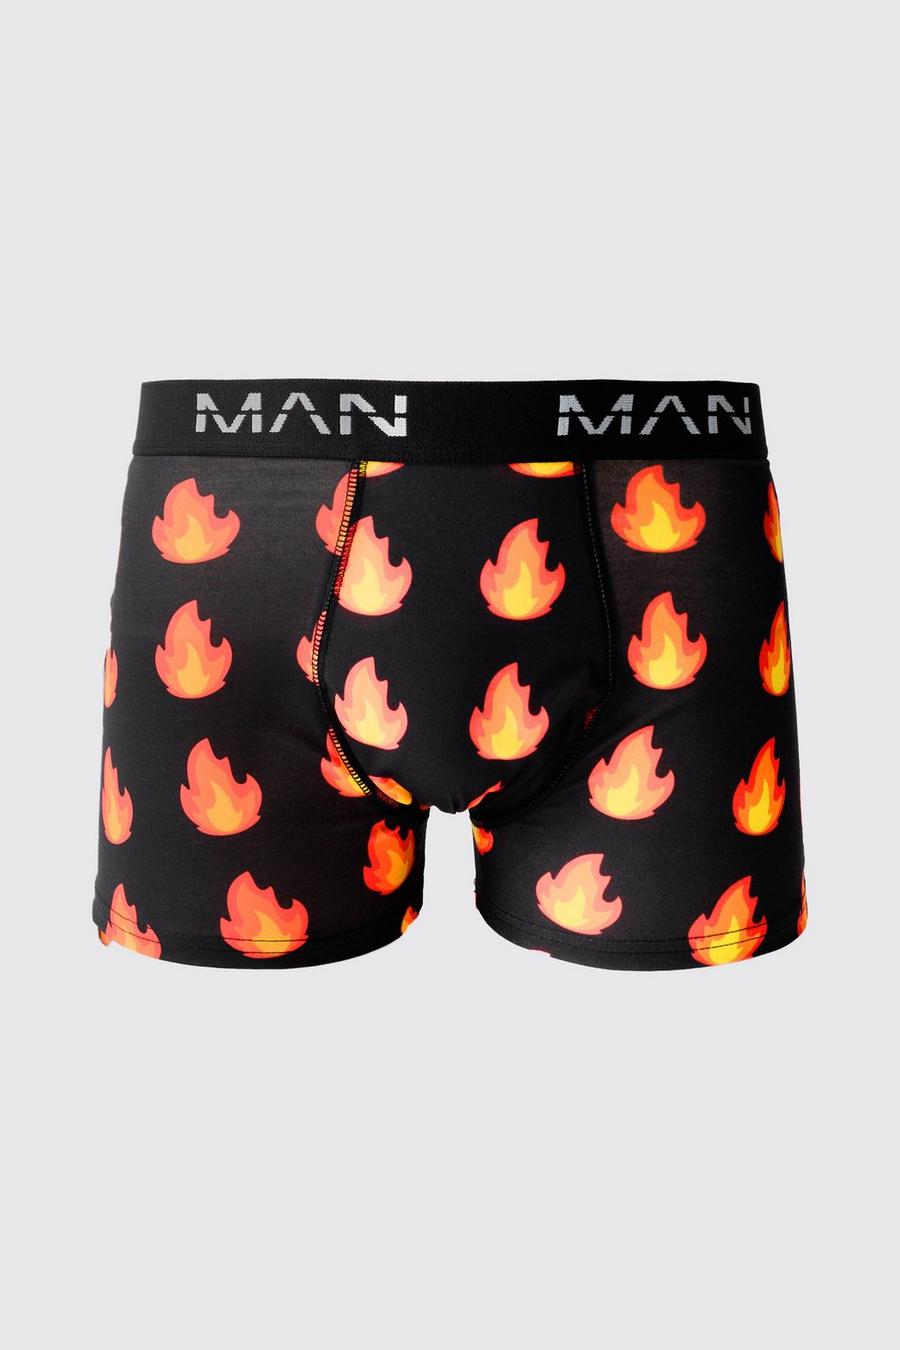 Multi Man Flames Printed Boxers